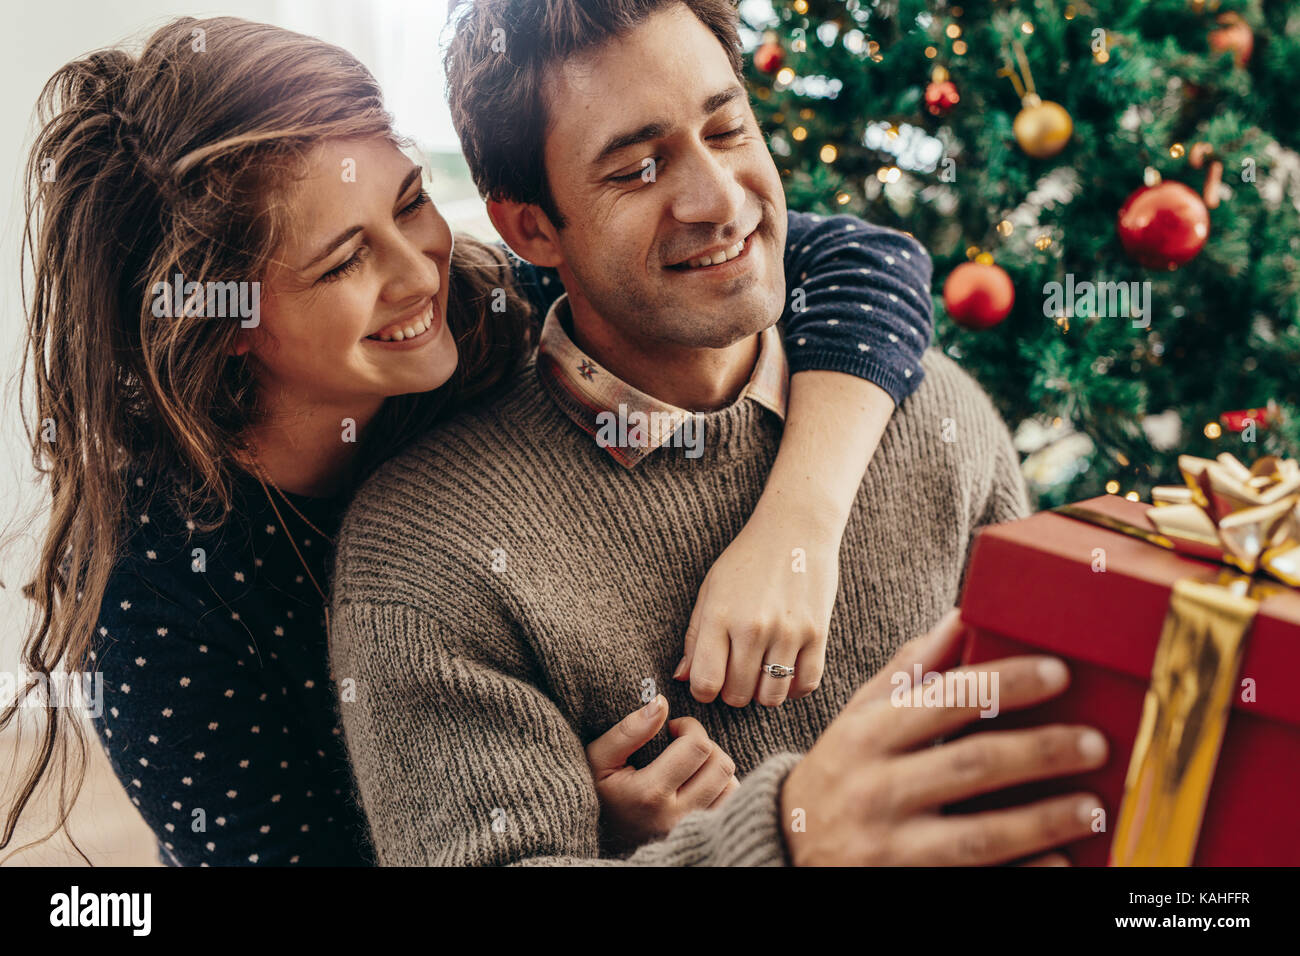 Paar mit Geschenkbox sitzen in der Nähe der Weihnachtsbaum. Lächelnde Frau ihrem Partner Holding von hinten, während die Ausgaben glückliche Momente Weihnachten feiern. Stockfoto